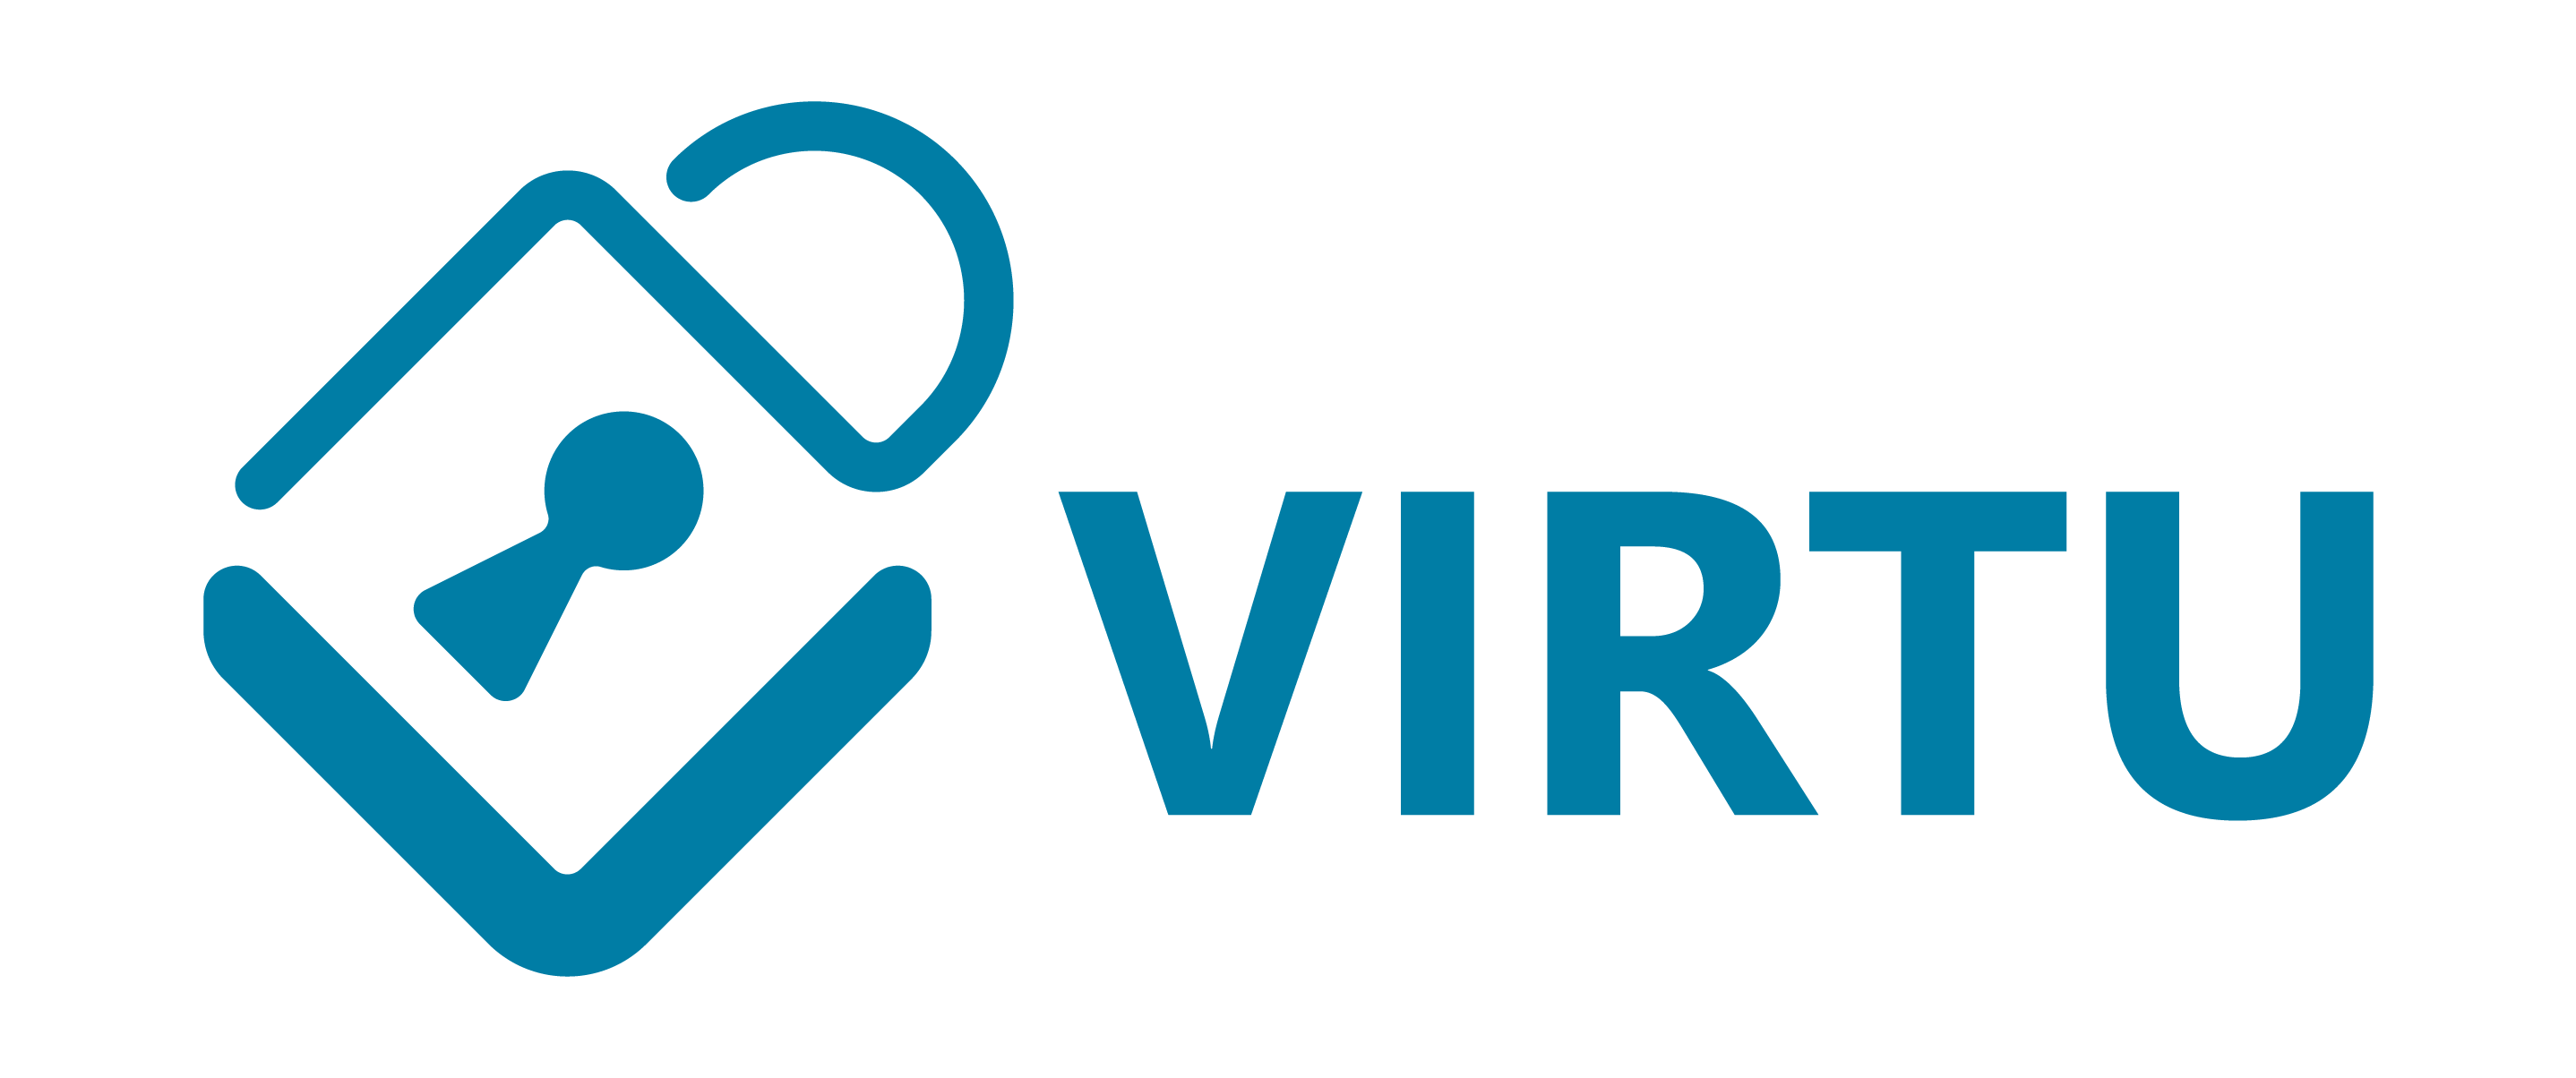 Virtu-logo